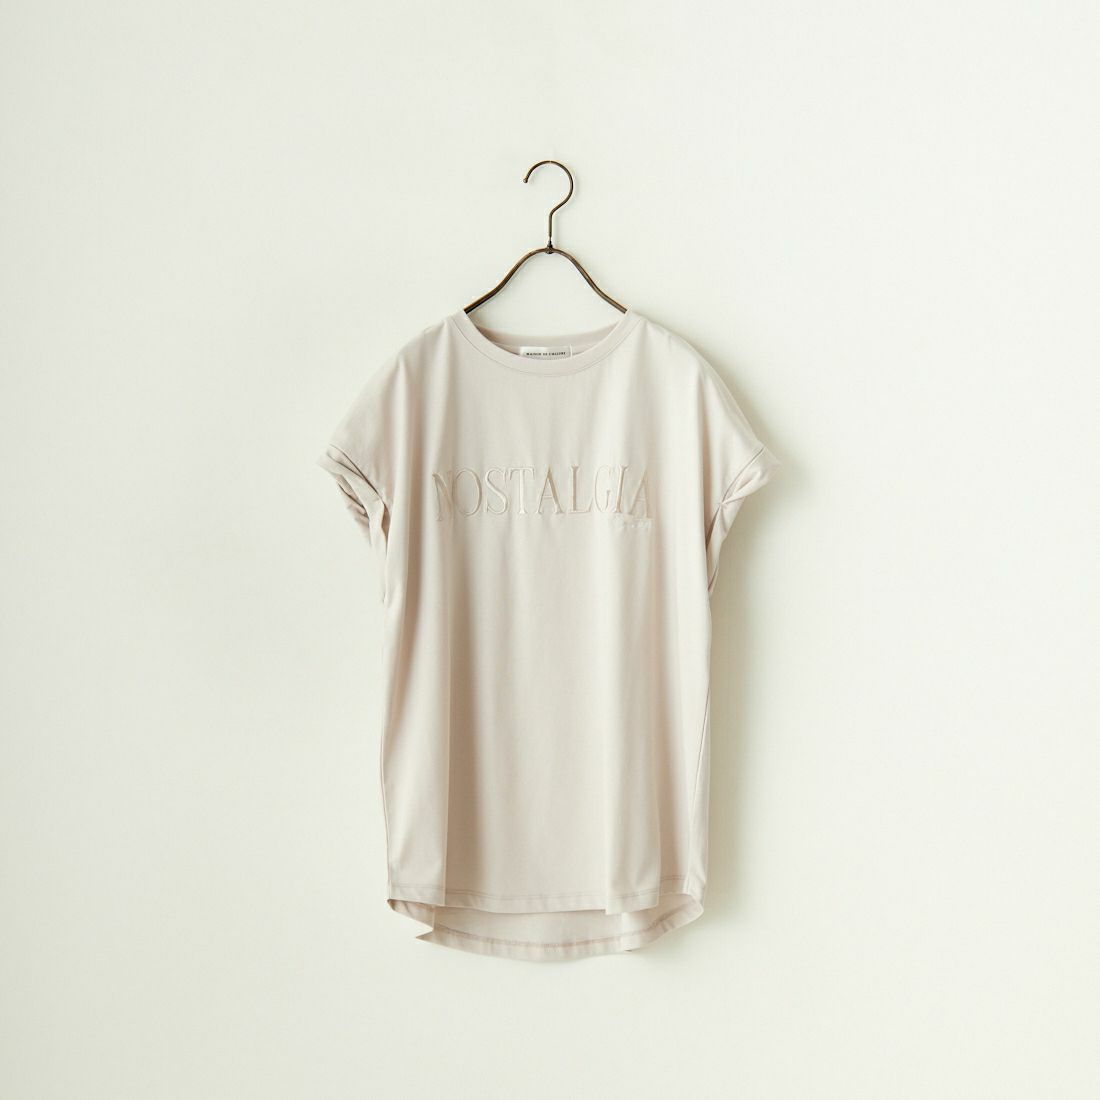 Maison de L'allure [メゾン ドゥ ラリュール] 捻りフレンチスリーブ ロゴ刺繍Tシャツ [24112016] 23 GREIGE